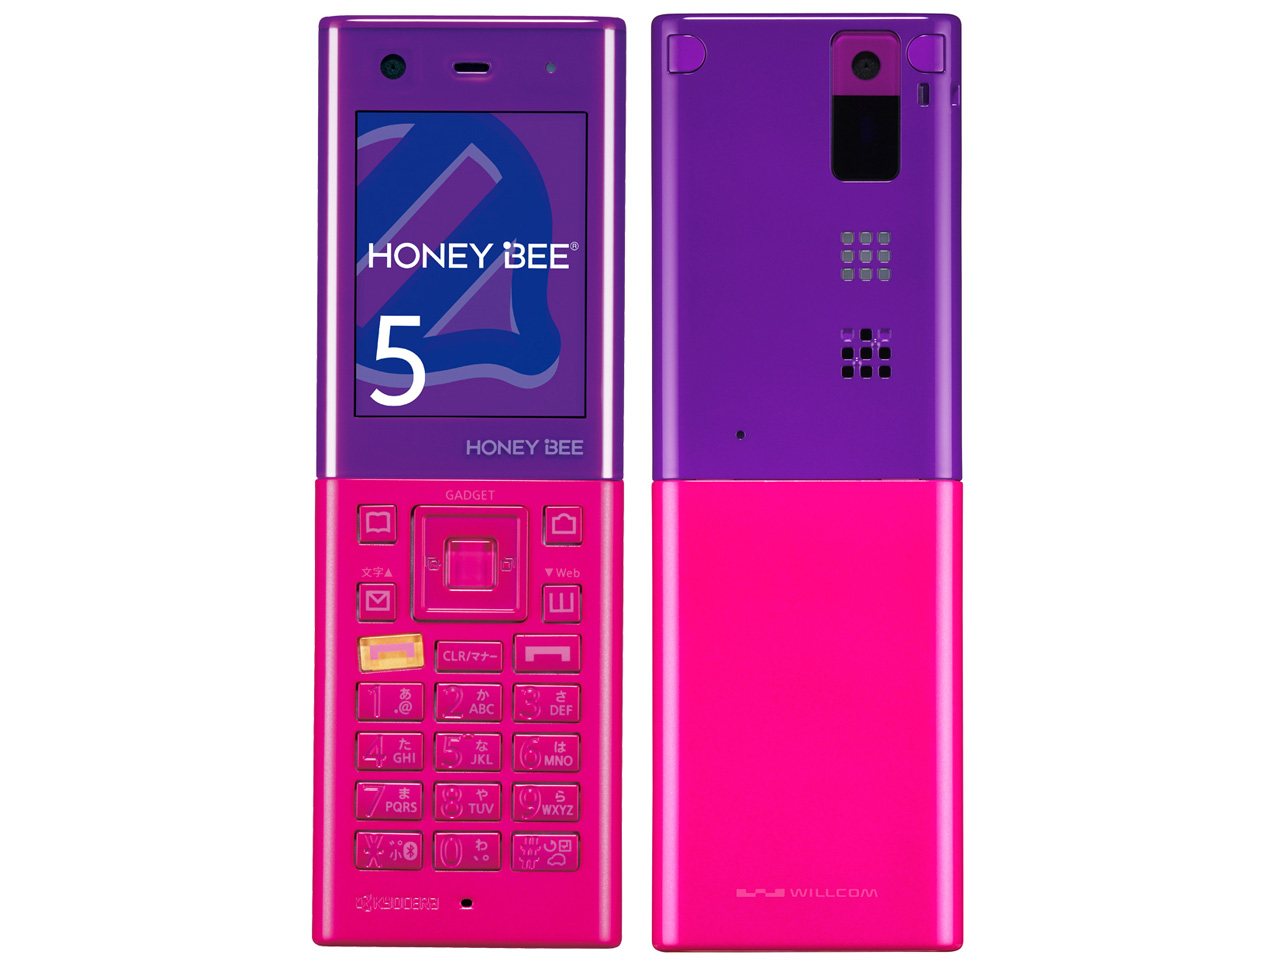 価格.com - 京セラ HONEY BEE 5 WX07K [バイオレット&ピンク] 価格比較 